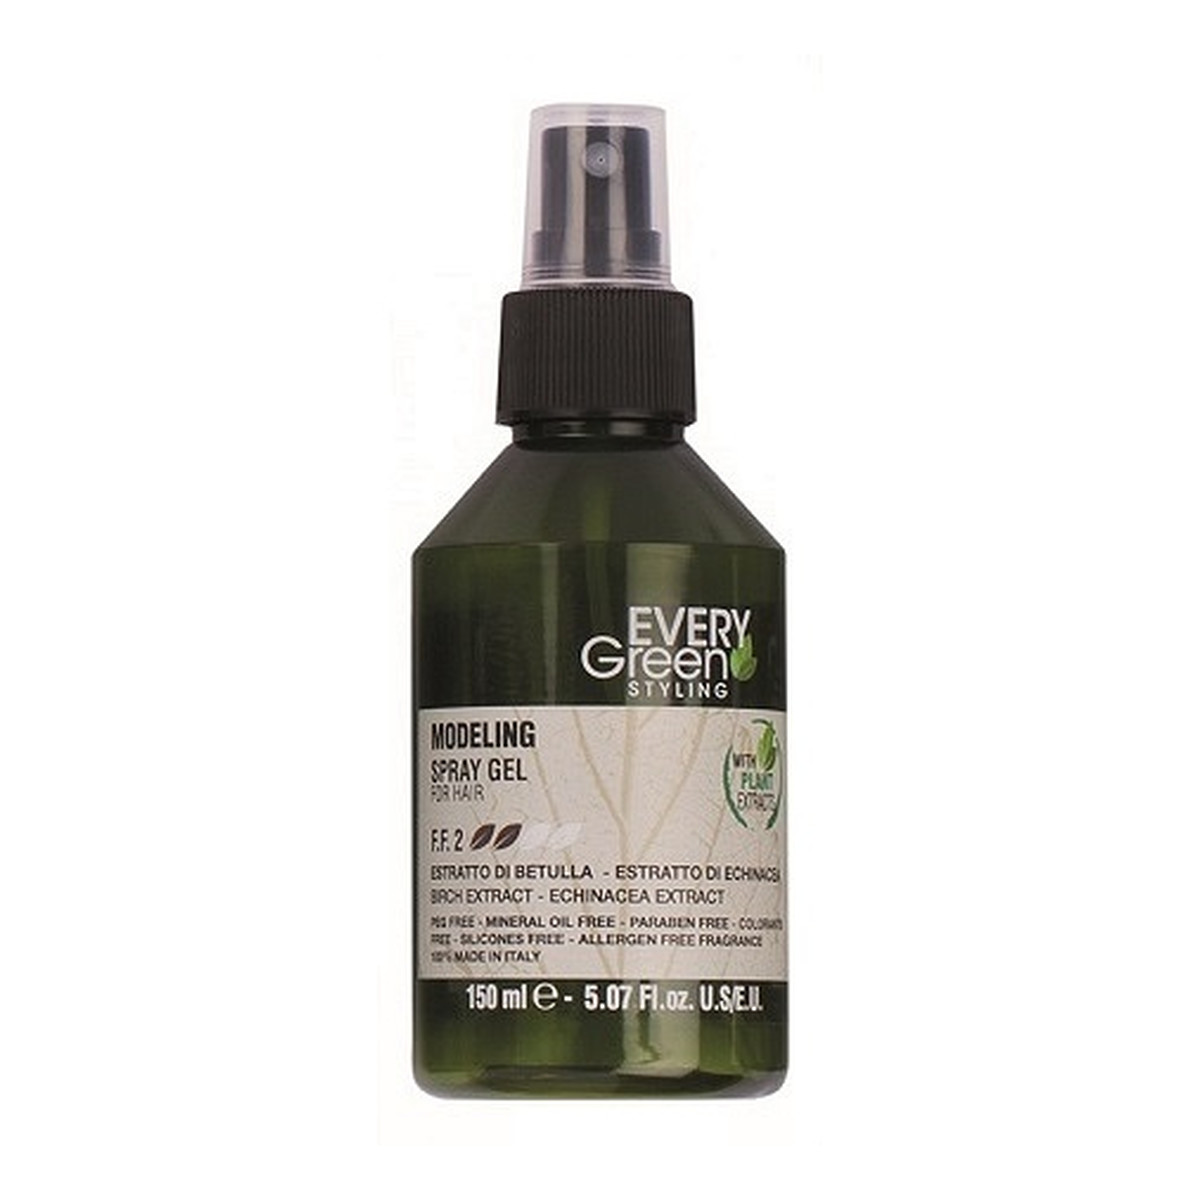 Every Green Modeling Spray Gel For Hair Modelujący żel w sprayu do włosów 150ml